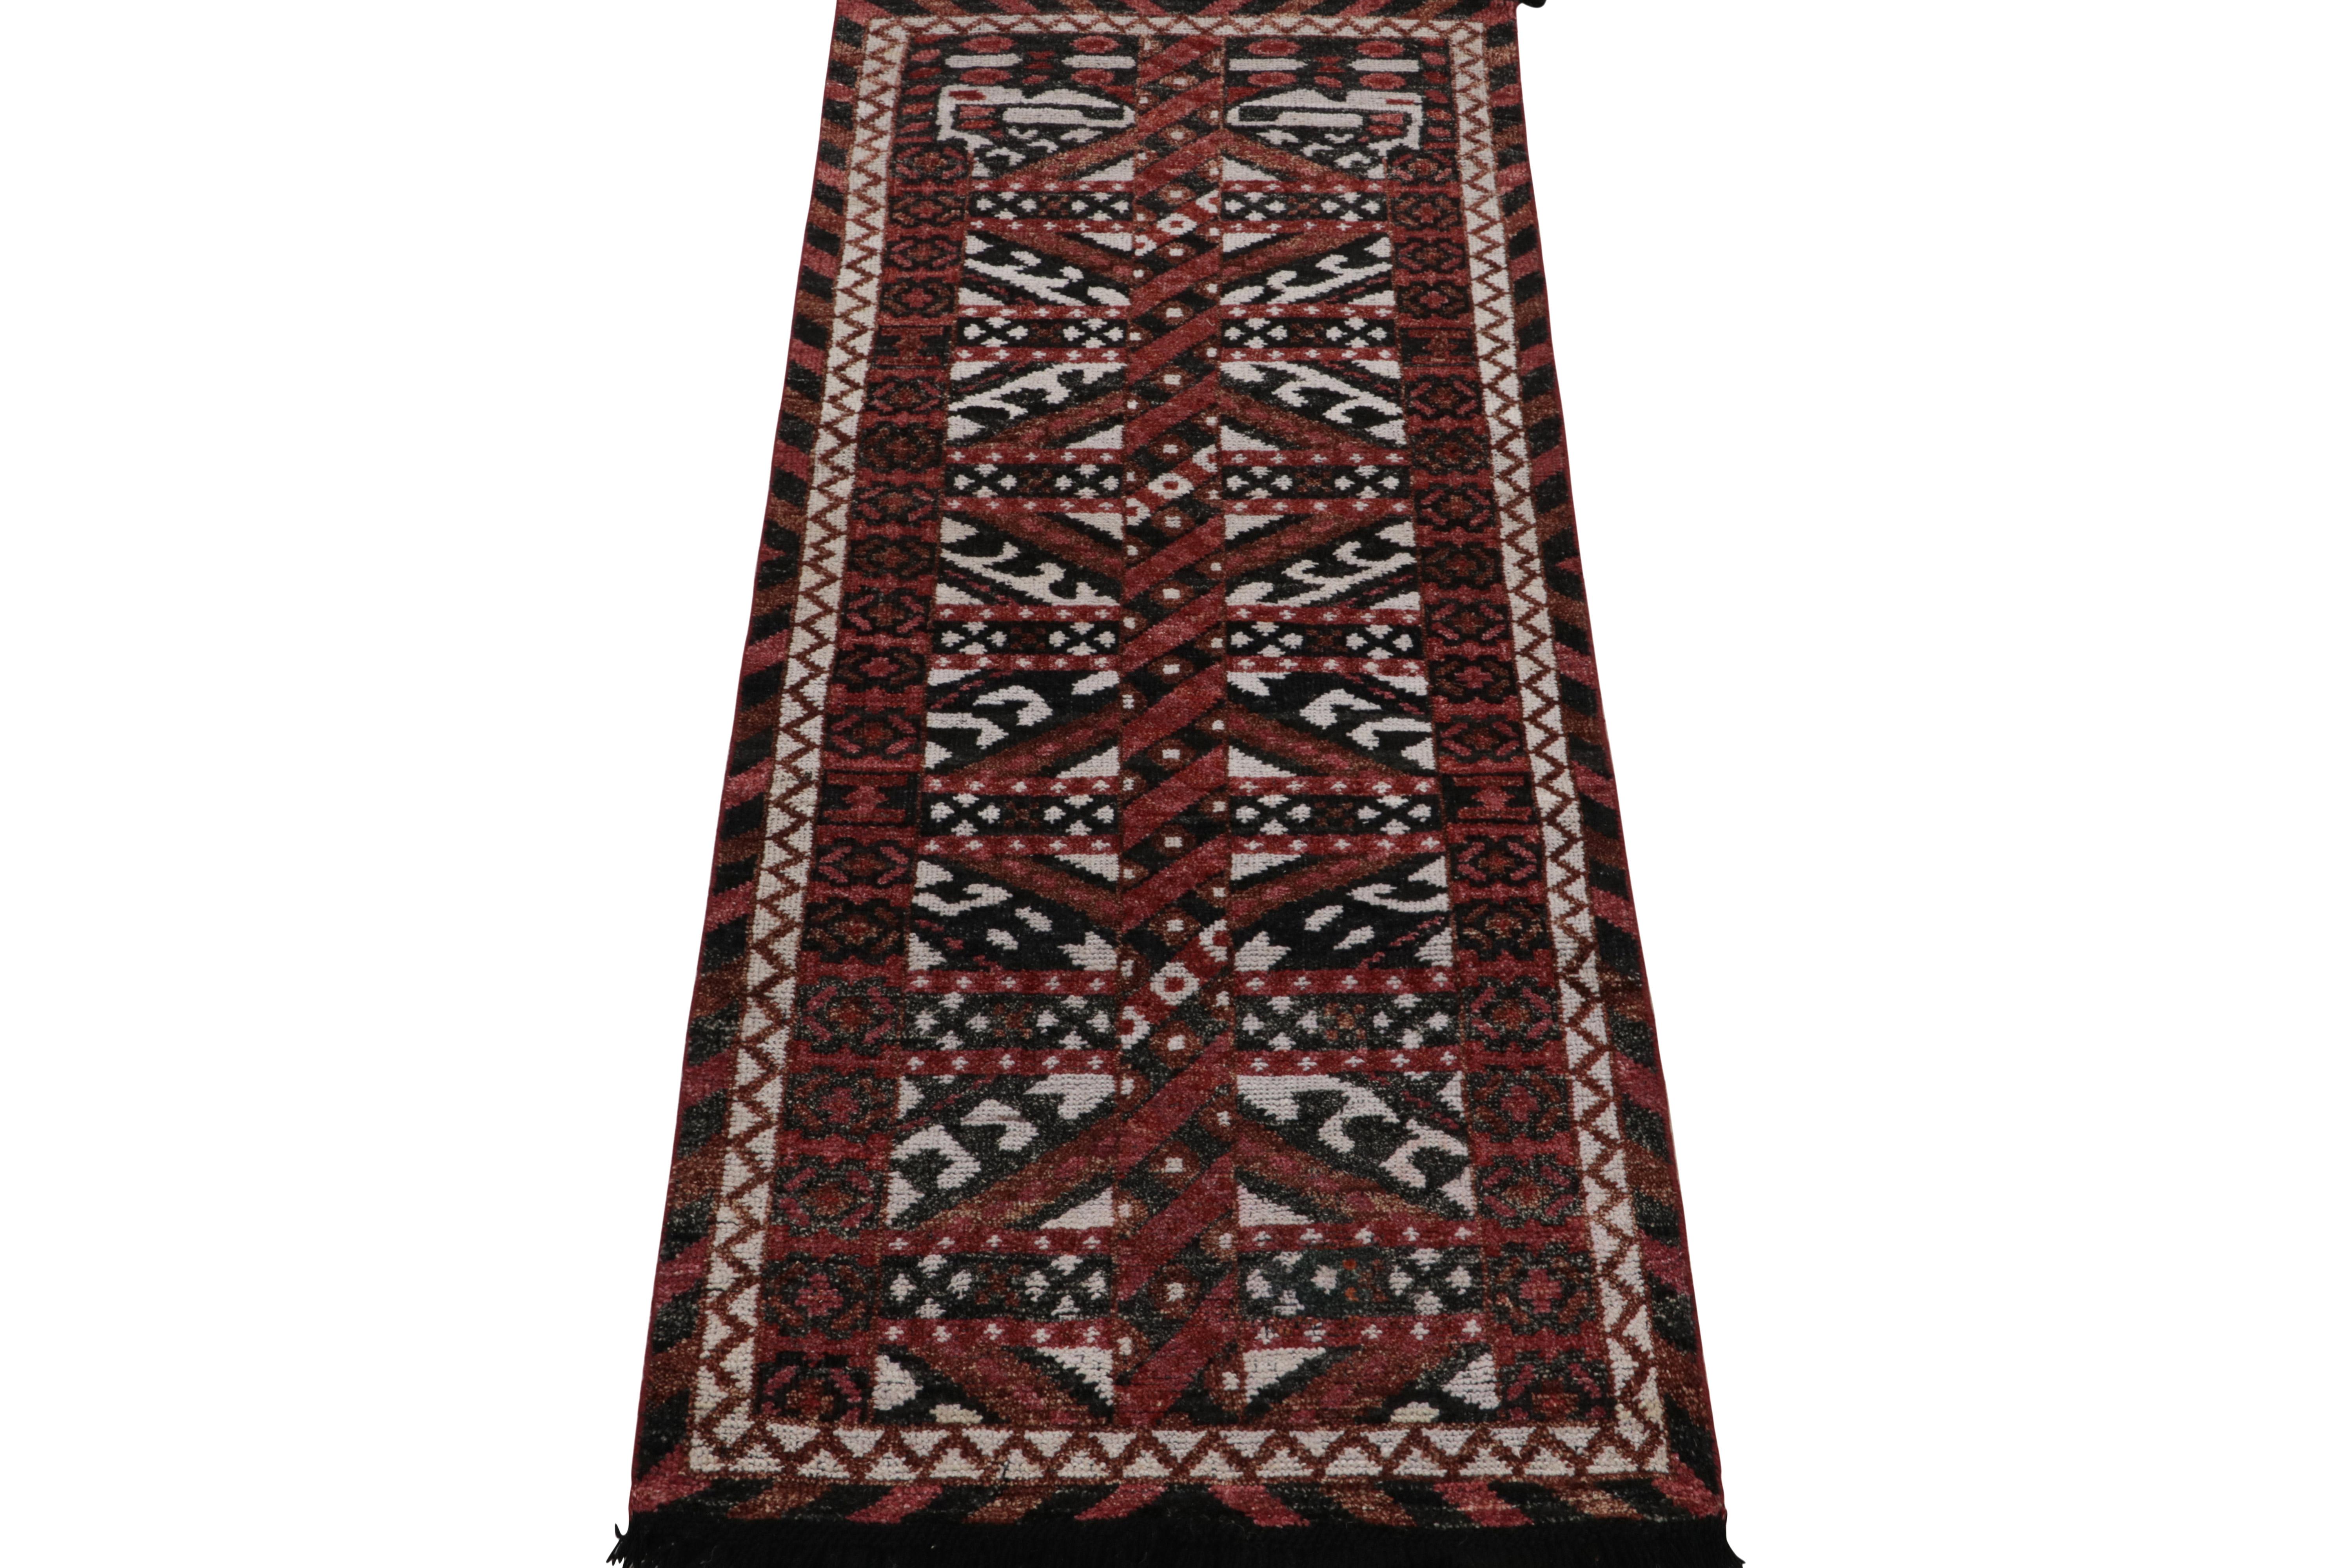 Inspiré des sensibilités tribales nomades, ce chemin de 2 x 6 de la Collection Rug & Kilim présente des motifs géométriques audacieux en rouge profond, marron chocolat, blanc et noir pour un mouvement exceptionnel à cette échelle. Les connaisseurs